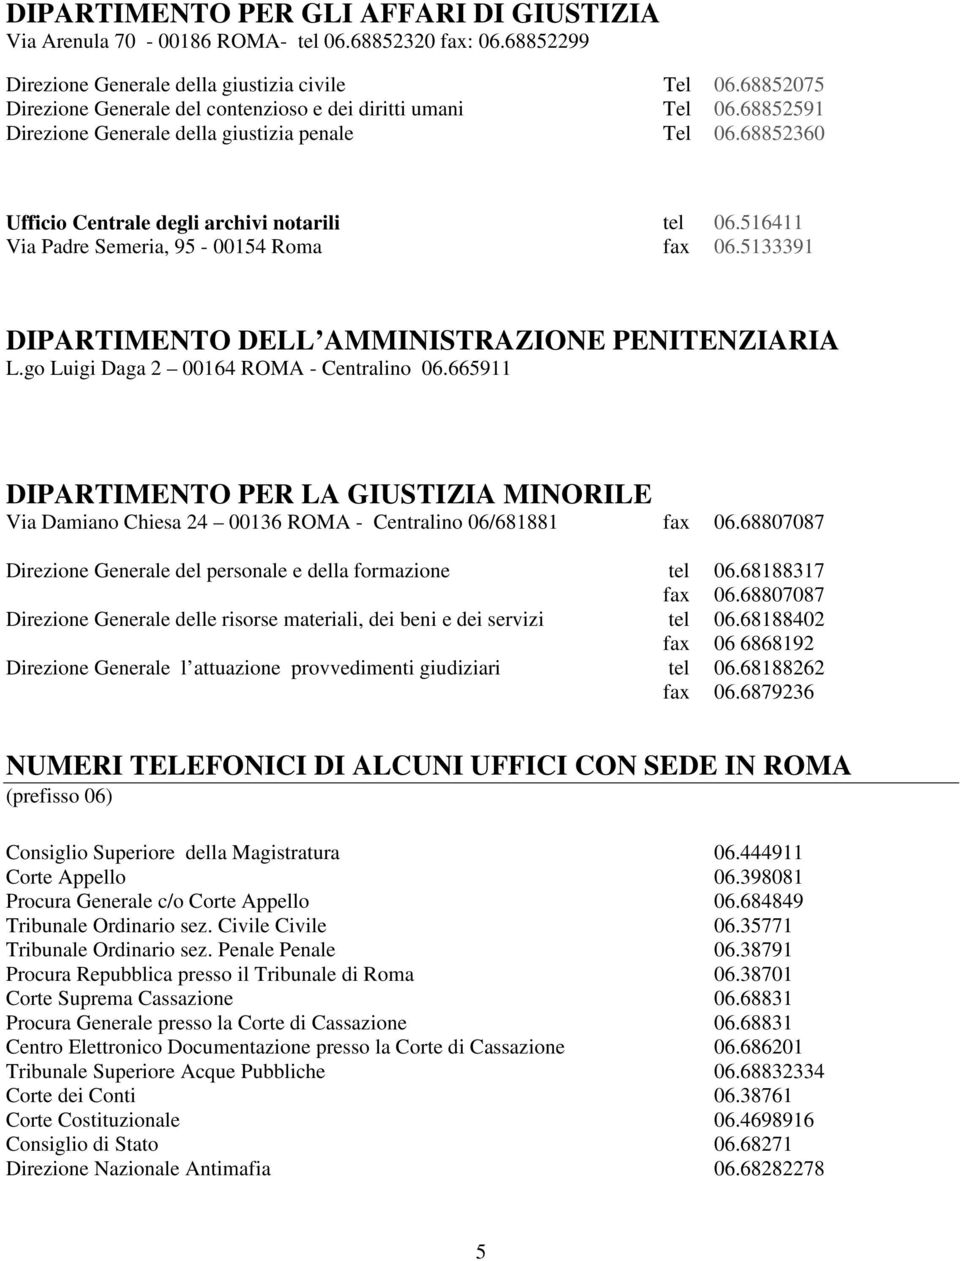 516411 Via Padre Semeria, 95-00154 Rma fax 06.5133391 DIPARTIMENTO DELL AMMINISTRAZIONE PENITENZIARIA L.g Luigi Daga 2 00164 ROMA - Centralin 06.